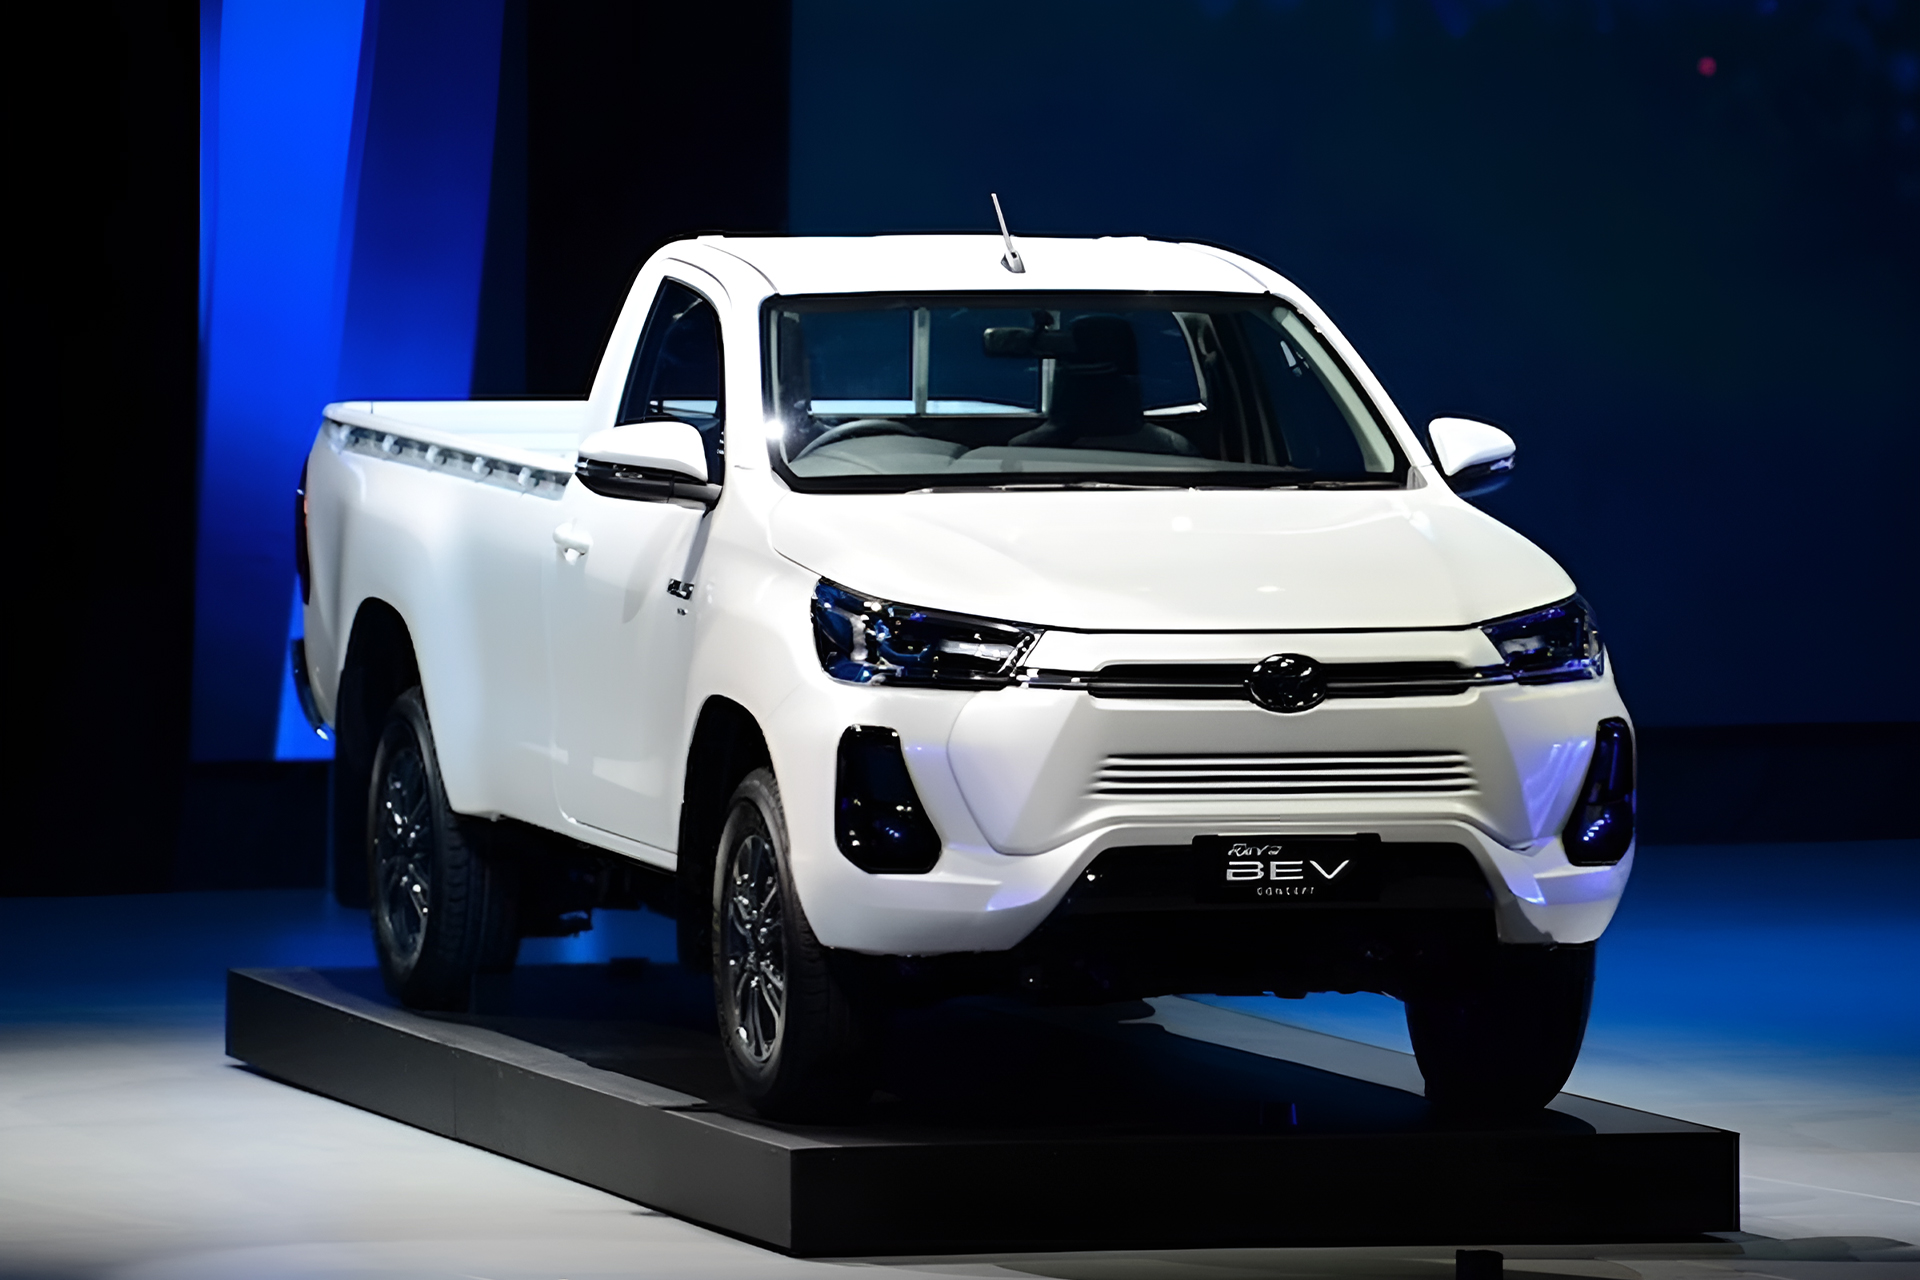 CEO da Toyota, Akio Toyota, apresenta Hilux 100% Elétrica que fará parte da frota de veículos movidos a energia limpa da montadora nos próximos anos